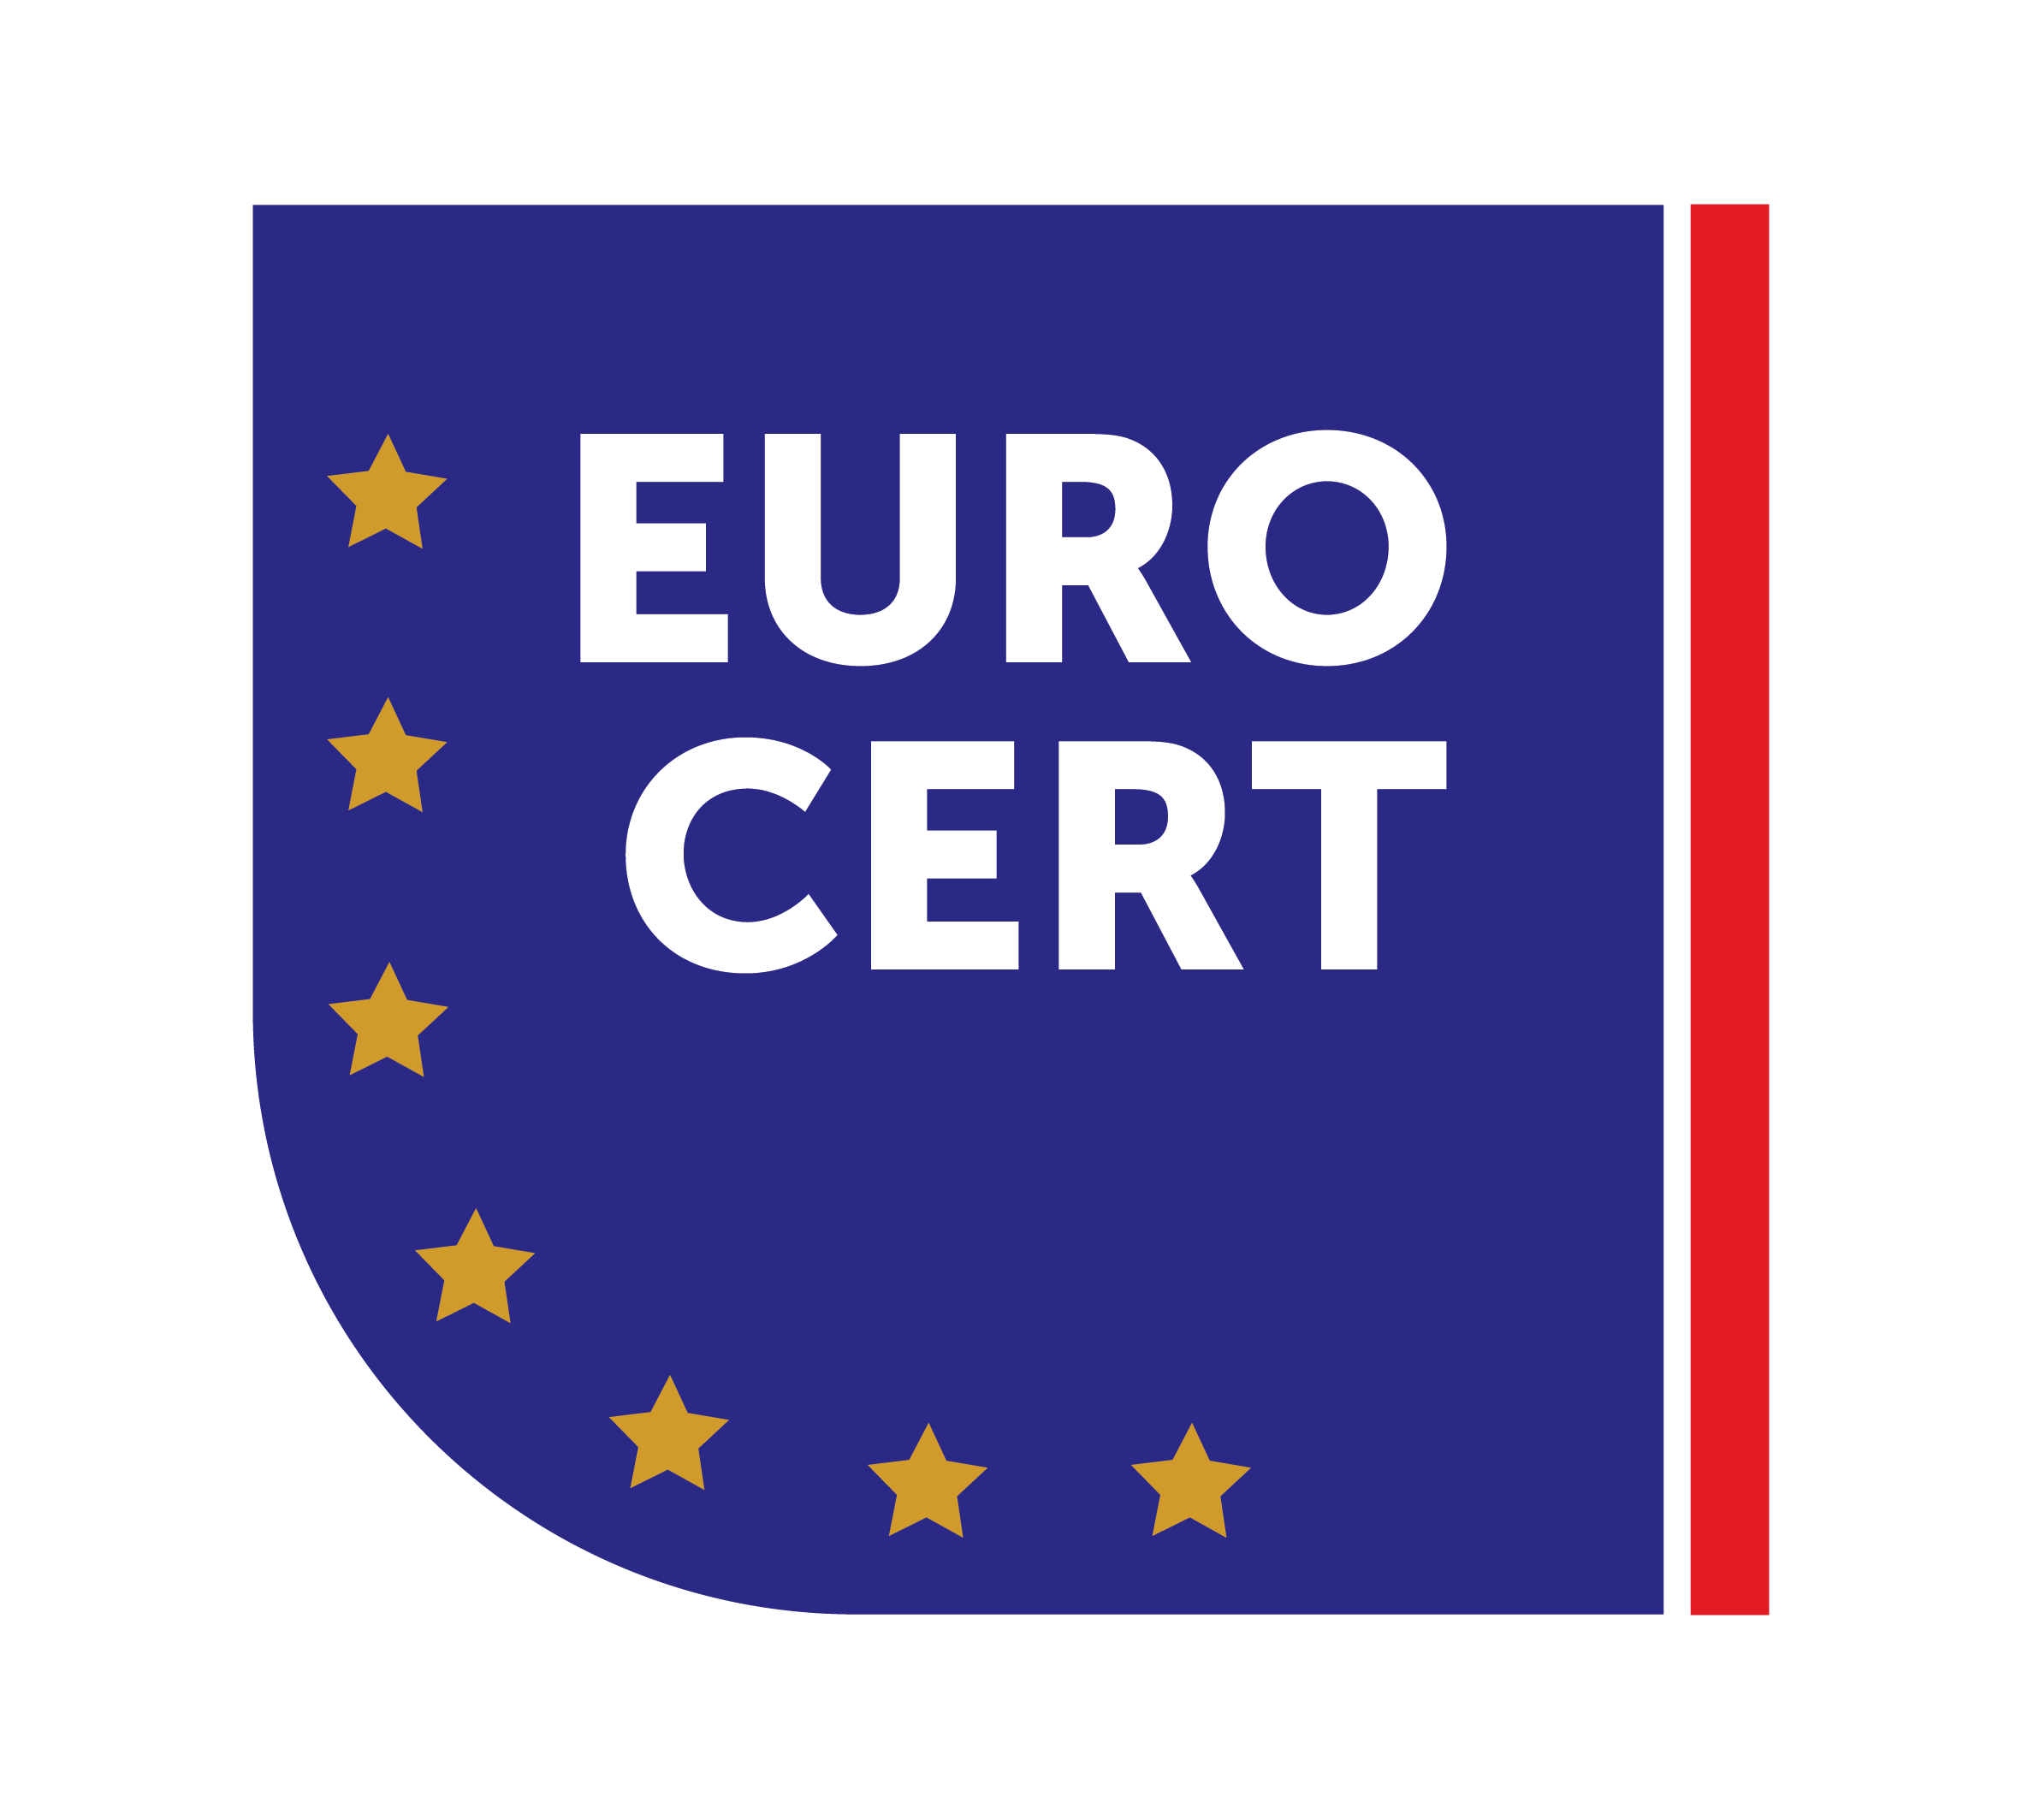 Eurocert logo